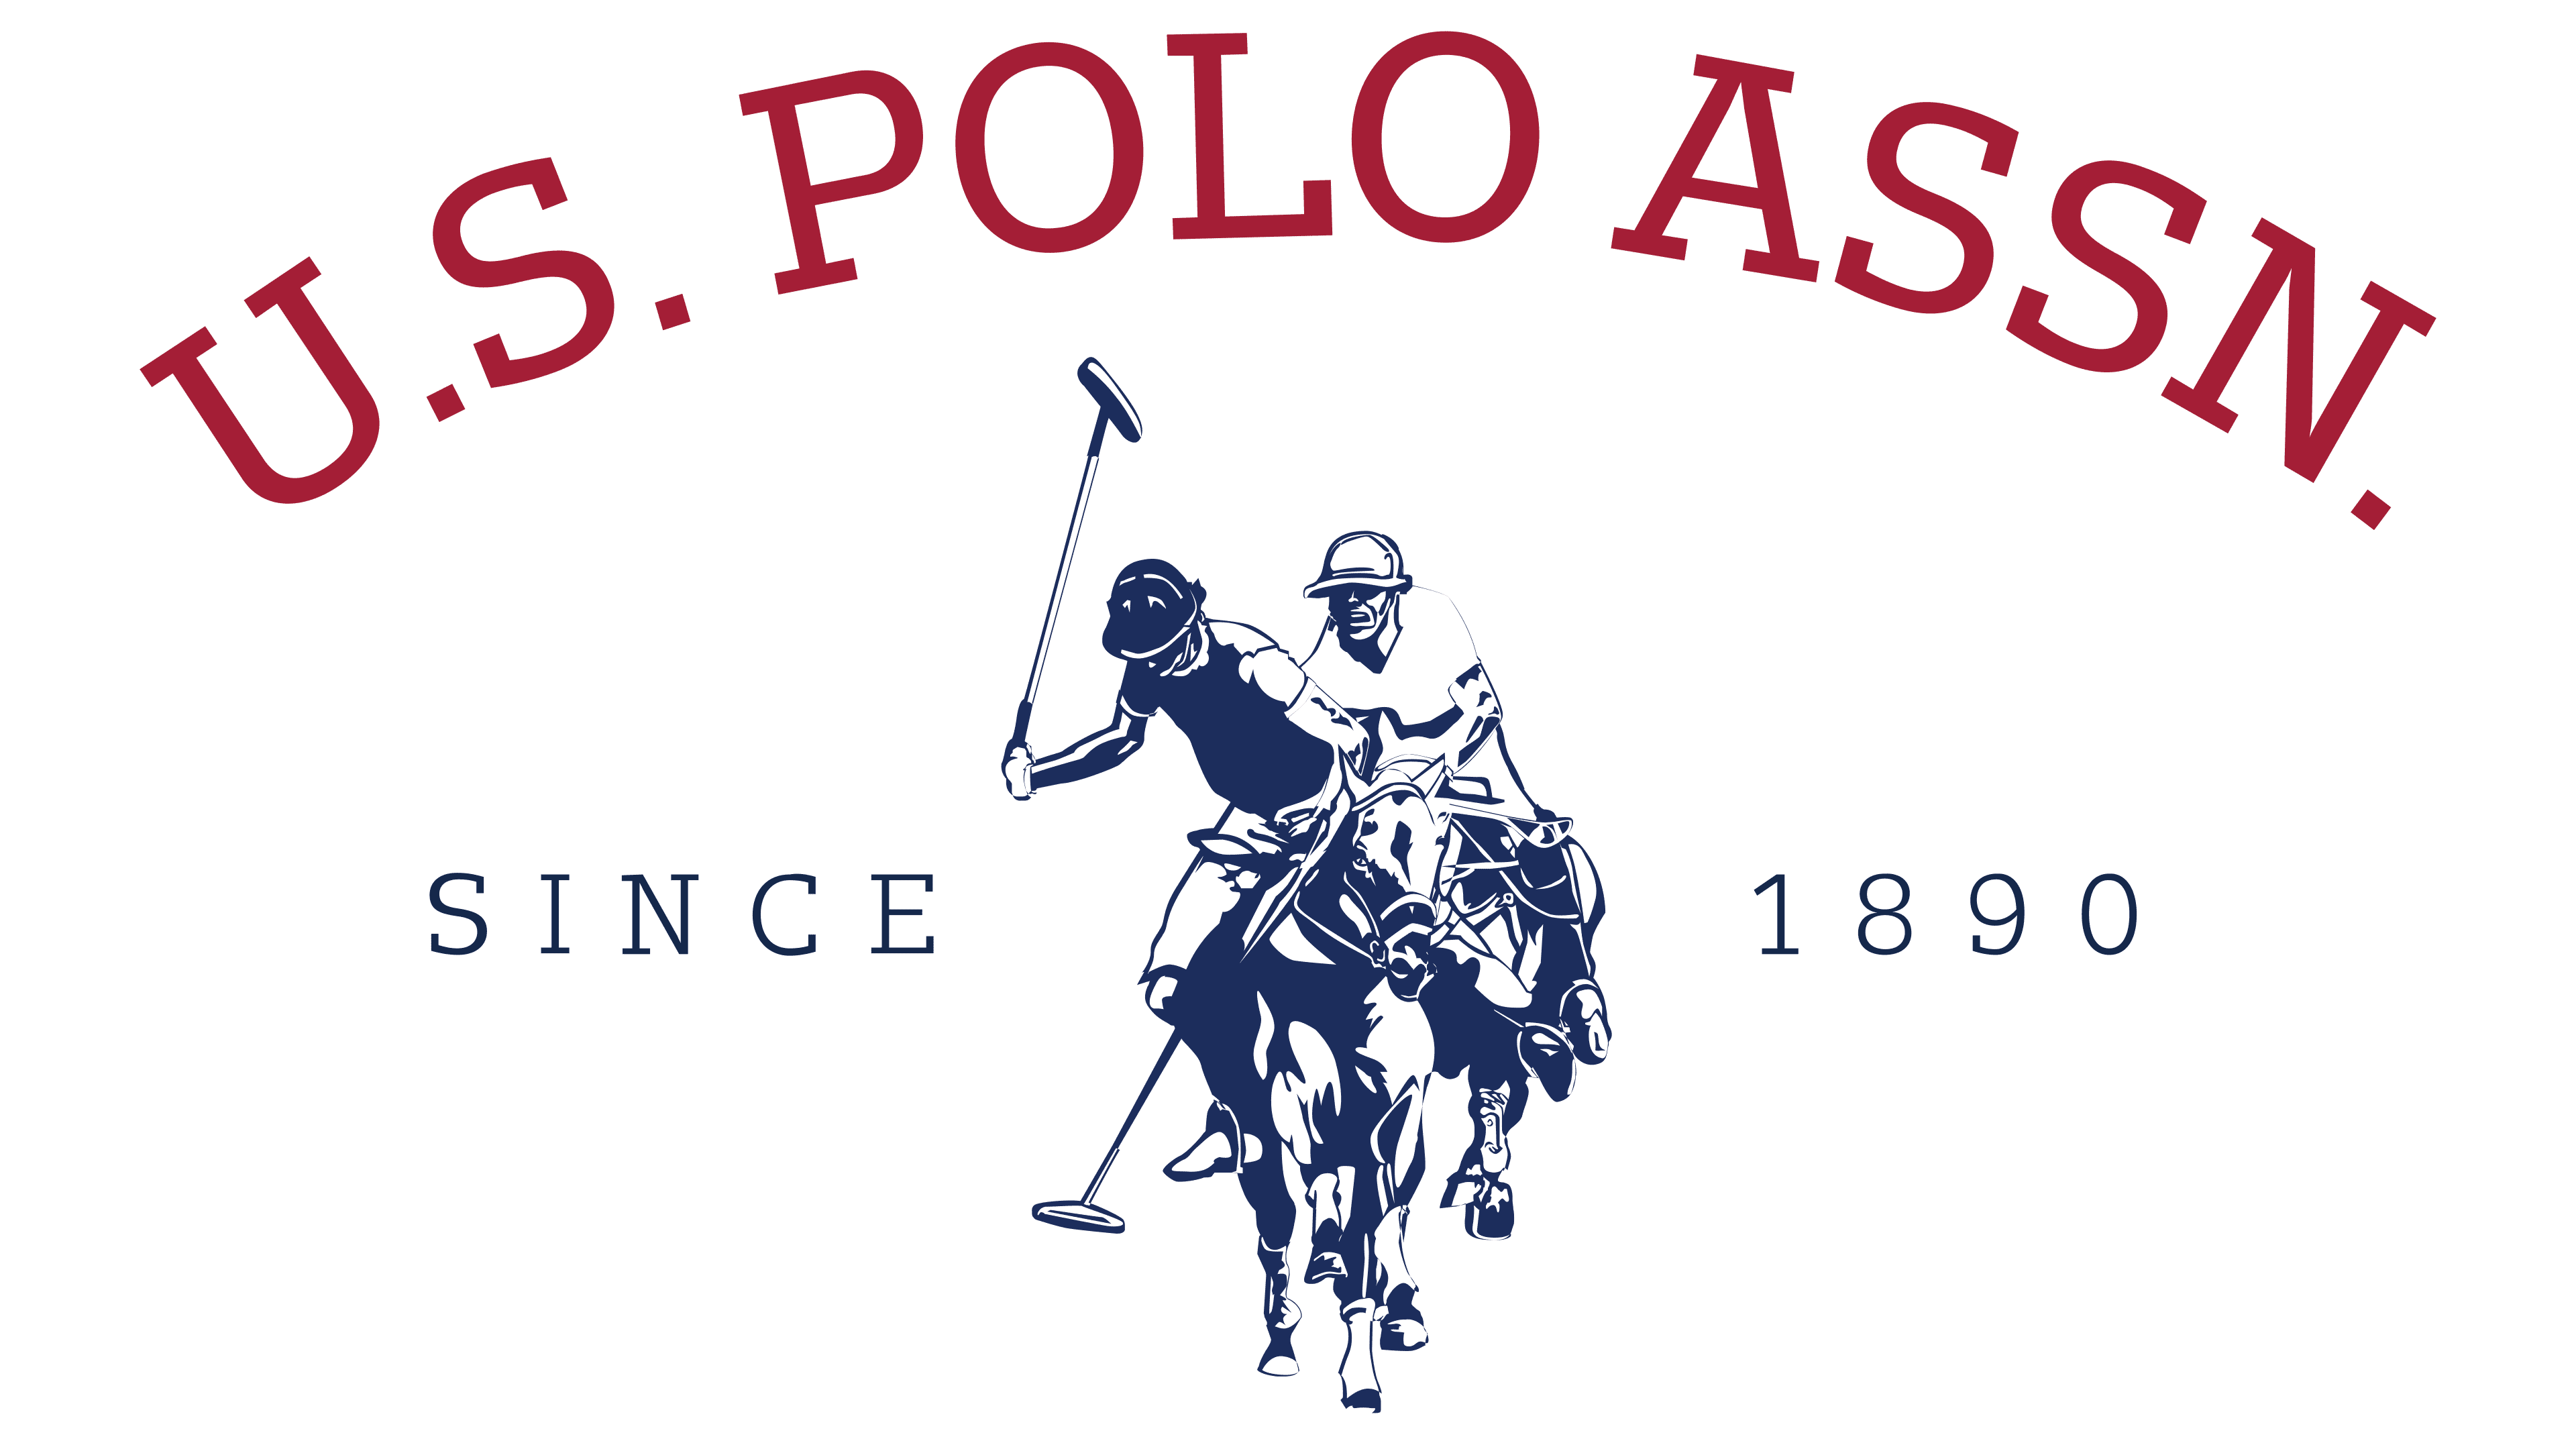 U.S. Polo Assn Logo